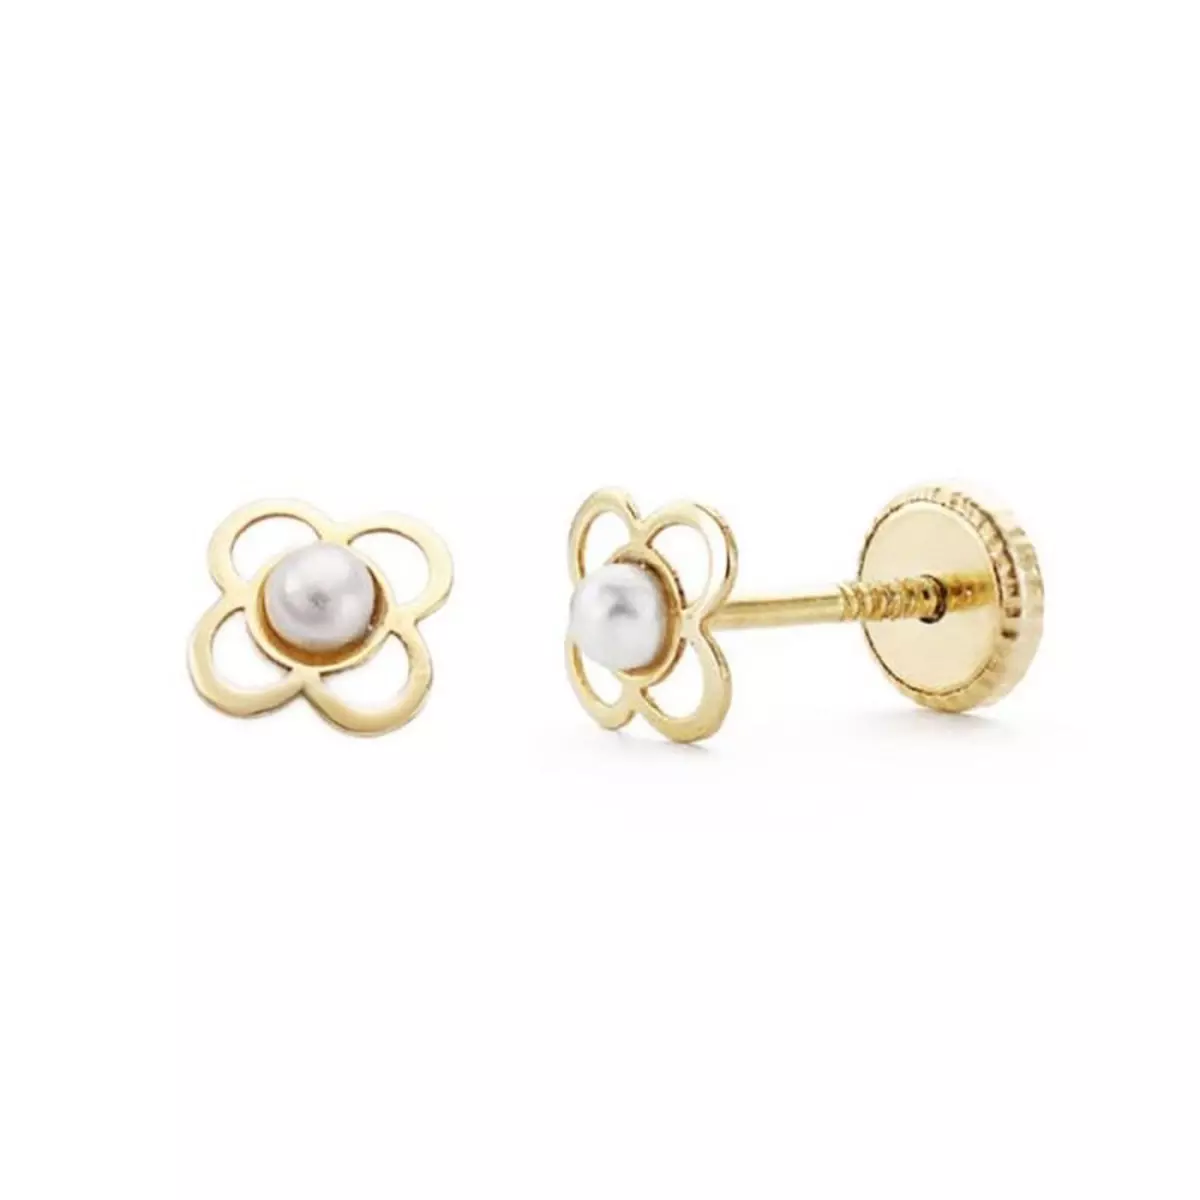 L'ATELIER D'AZUR Boucles d'Oreilles Or 18 Carats 750/000 Jaune - Perles de Culture - Motif Trèfle